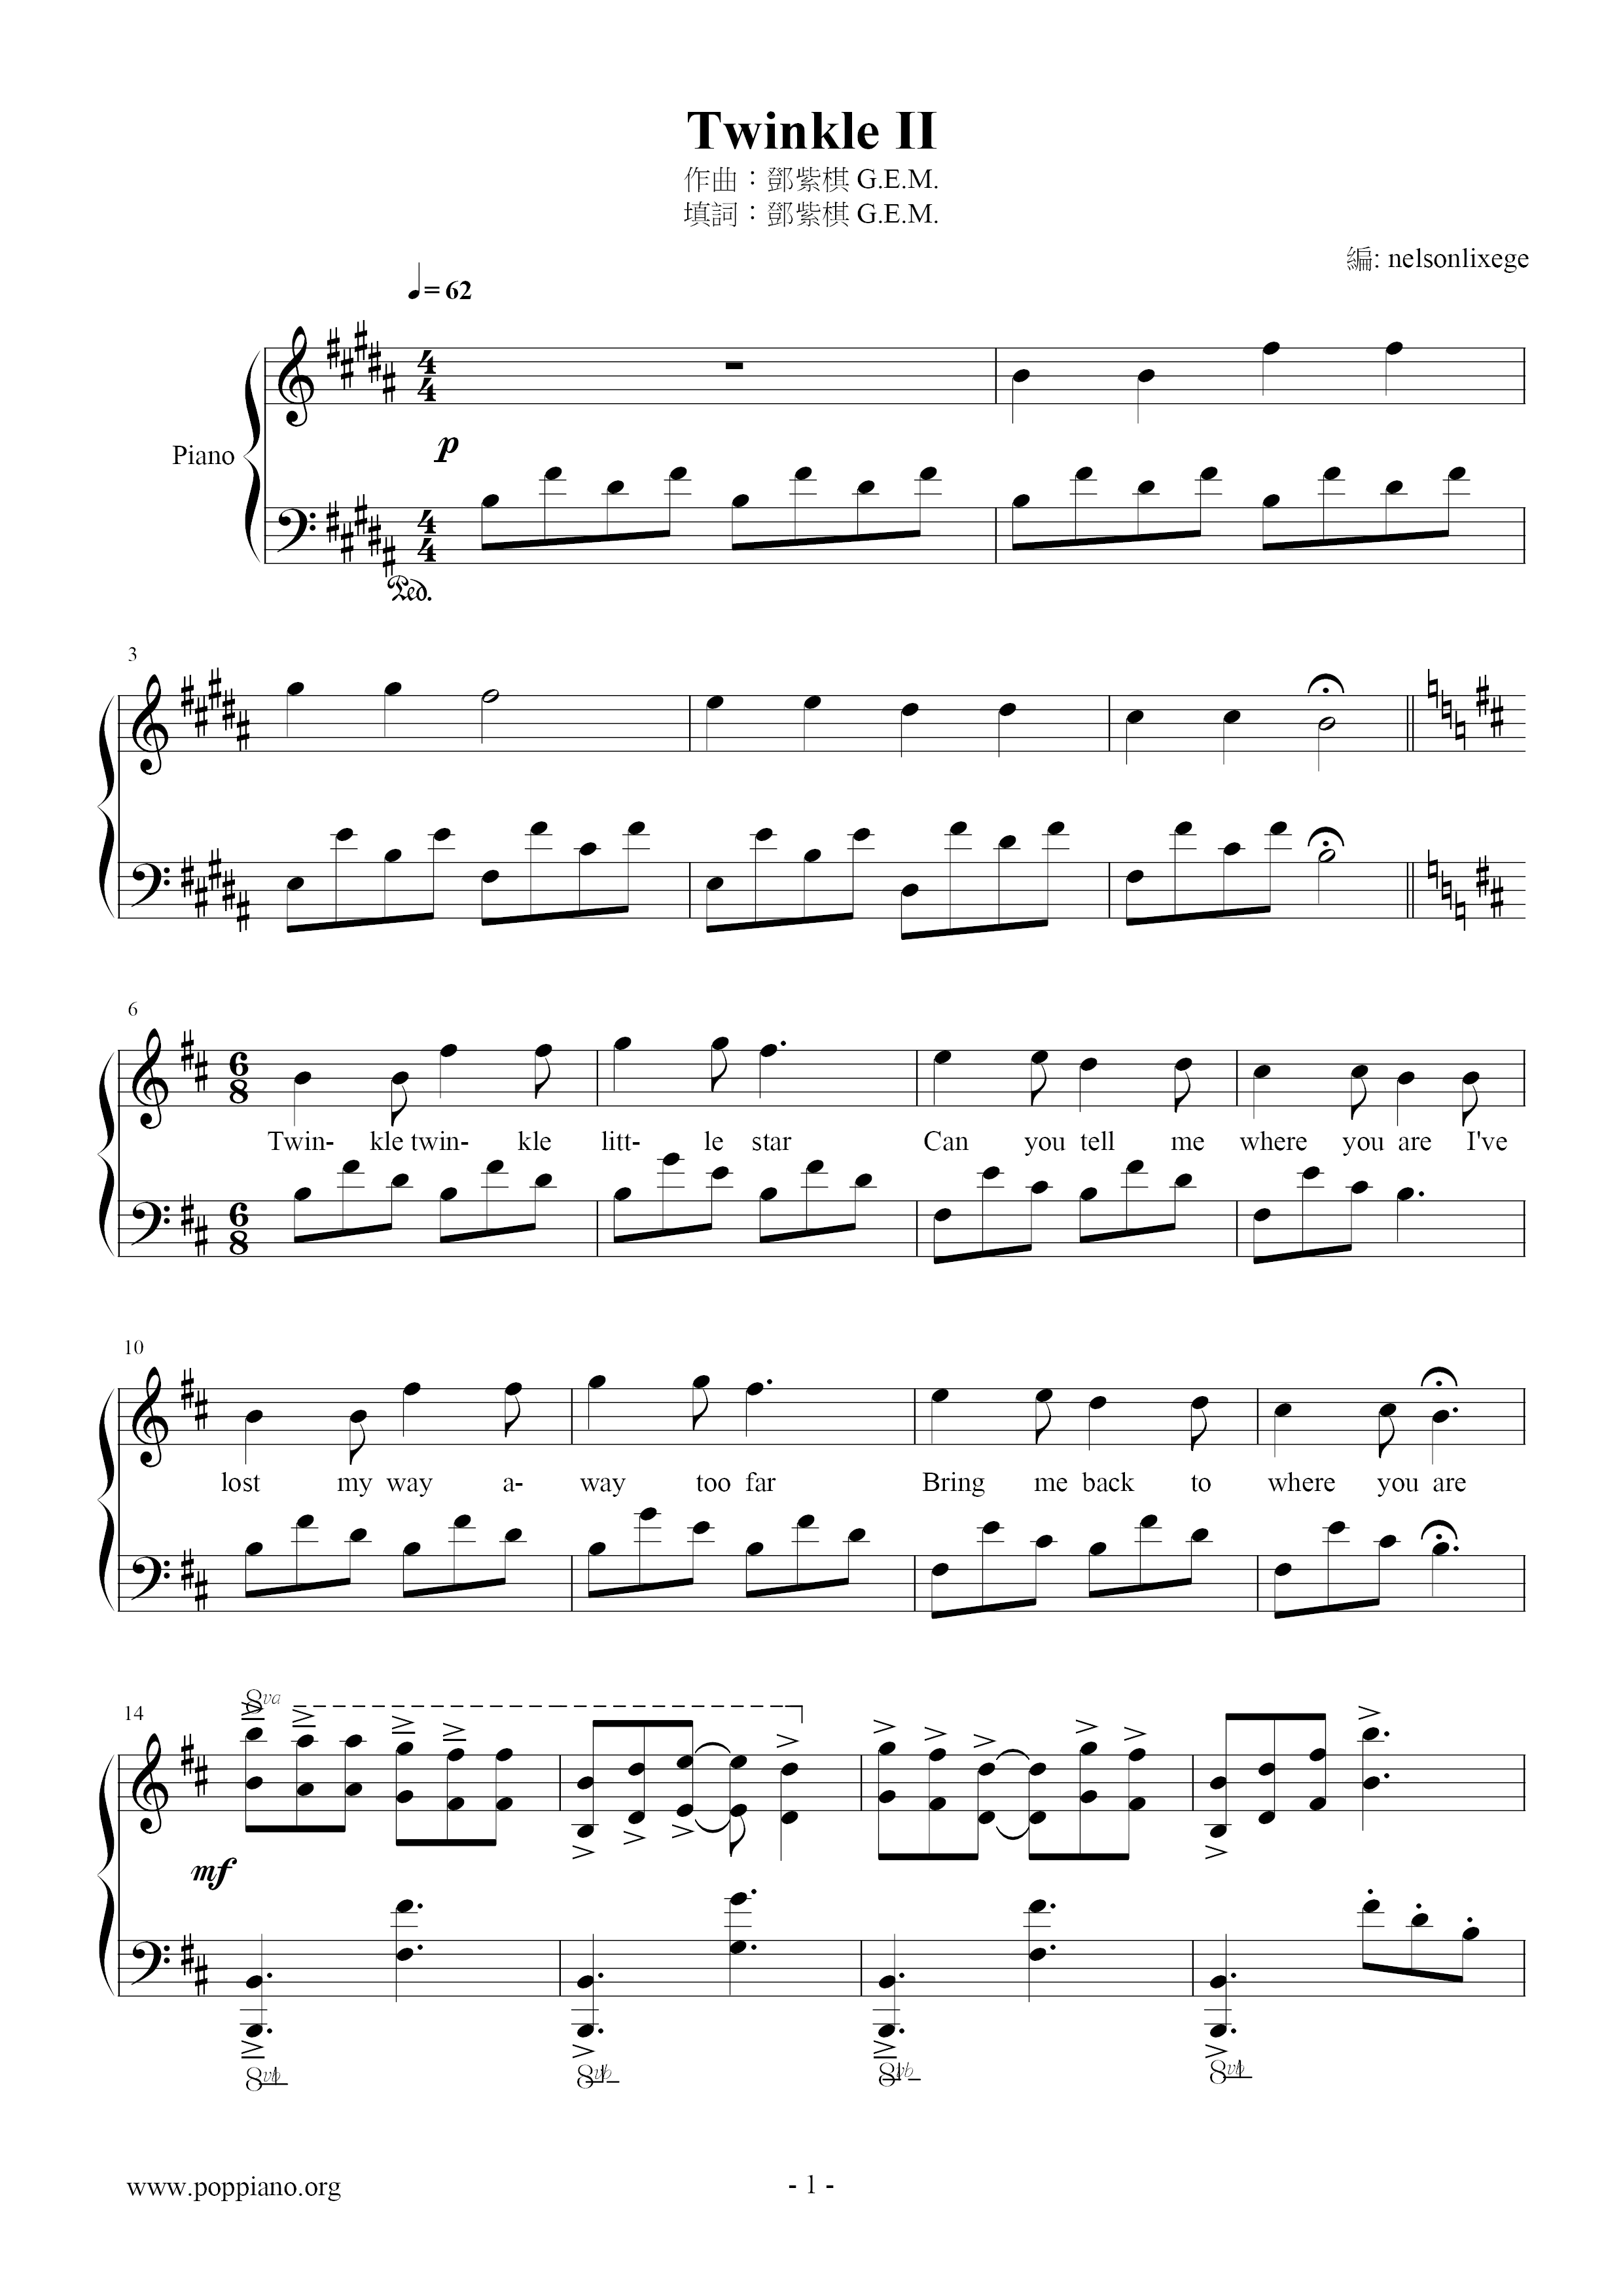 Twinkle II Score